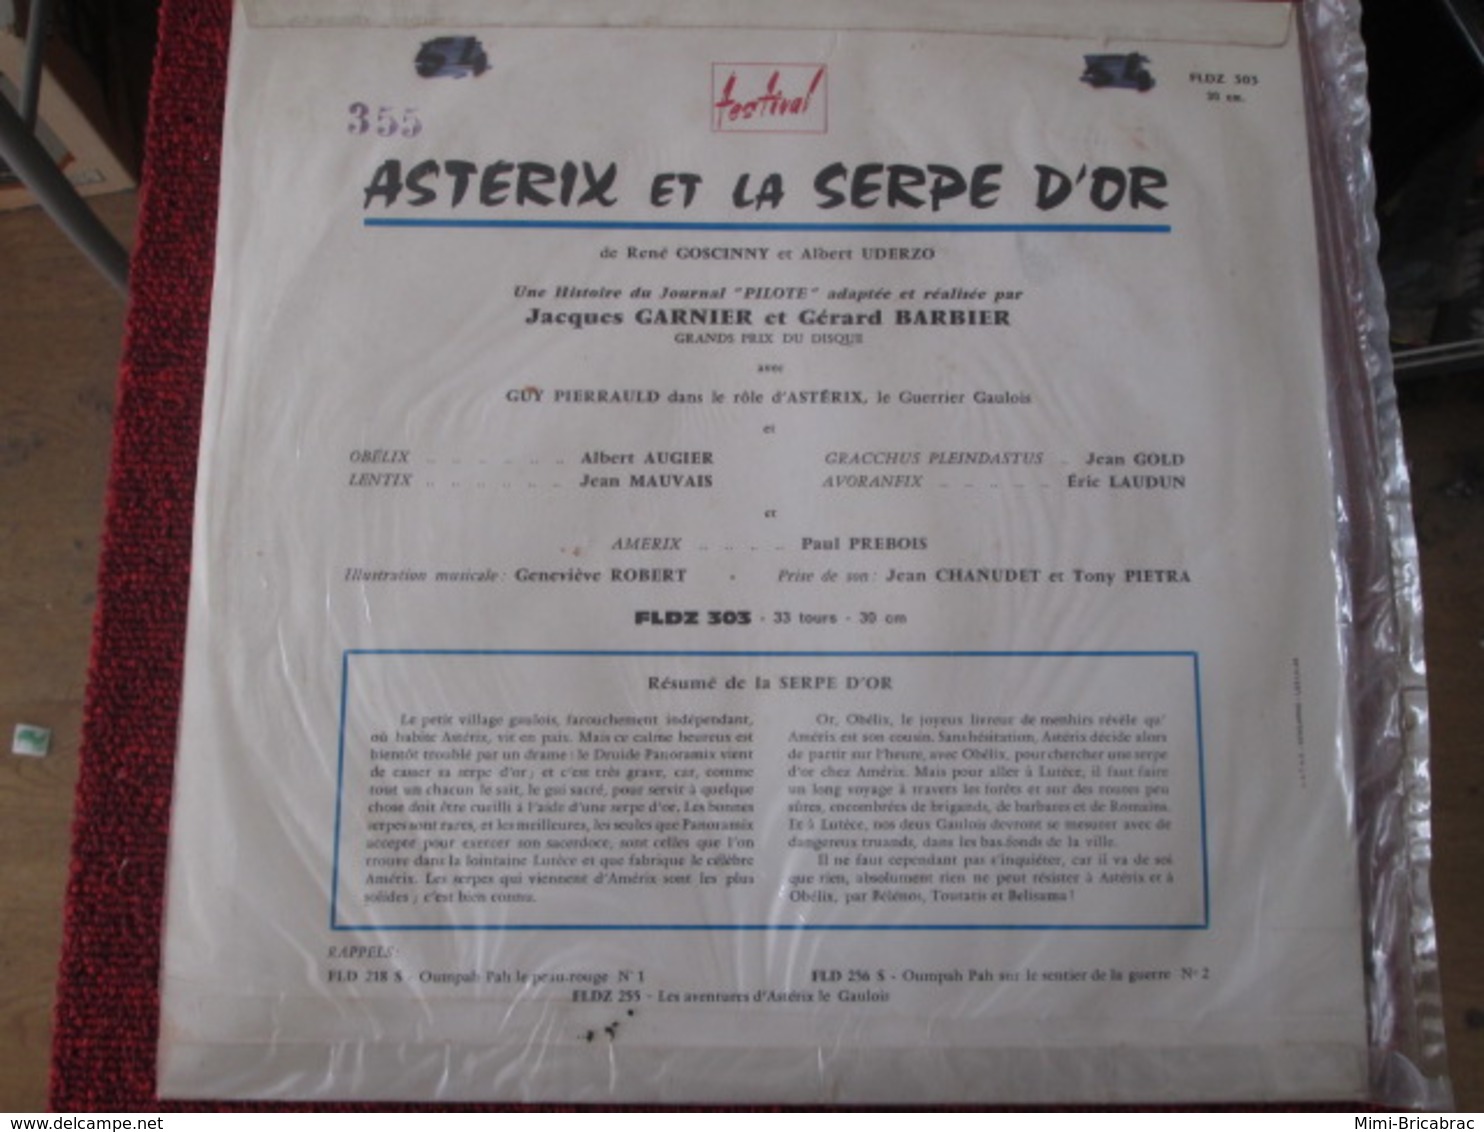 BACPLASTCAV Disque BANDES DESSINEE ANNEES 60 ASTERIX ET LA SERPE D'OR 33T 30cm - Schallplatten & CD